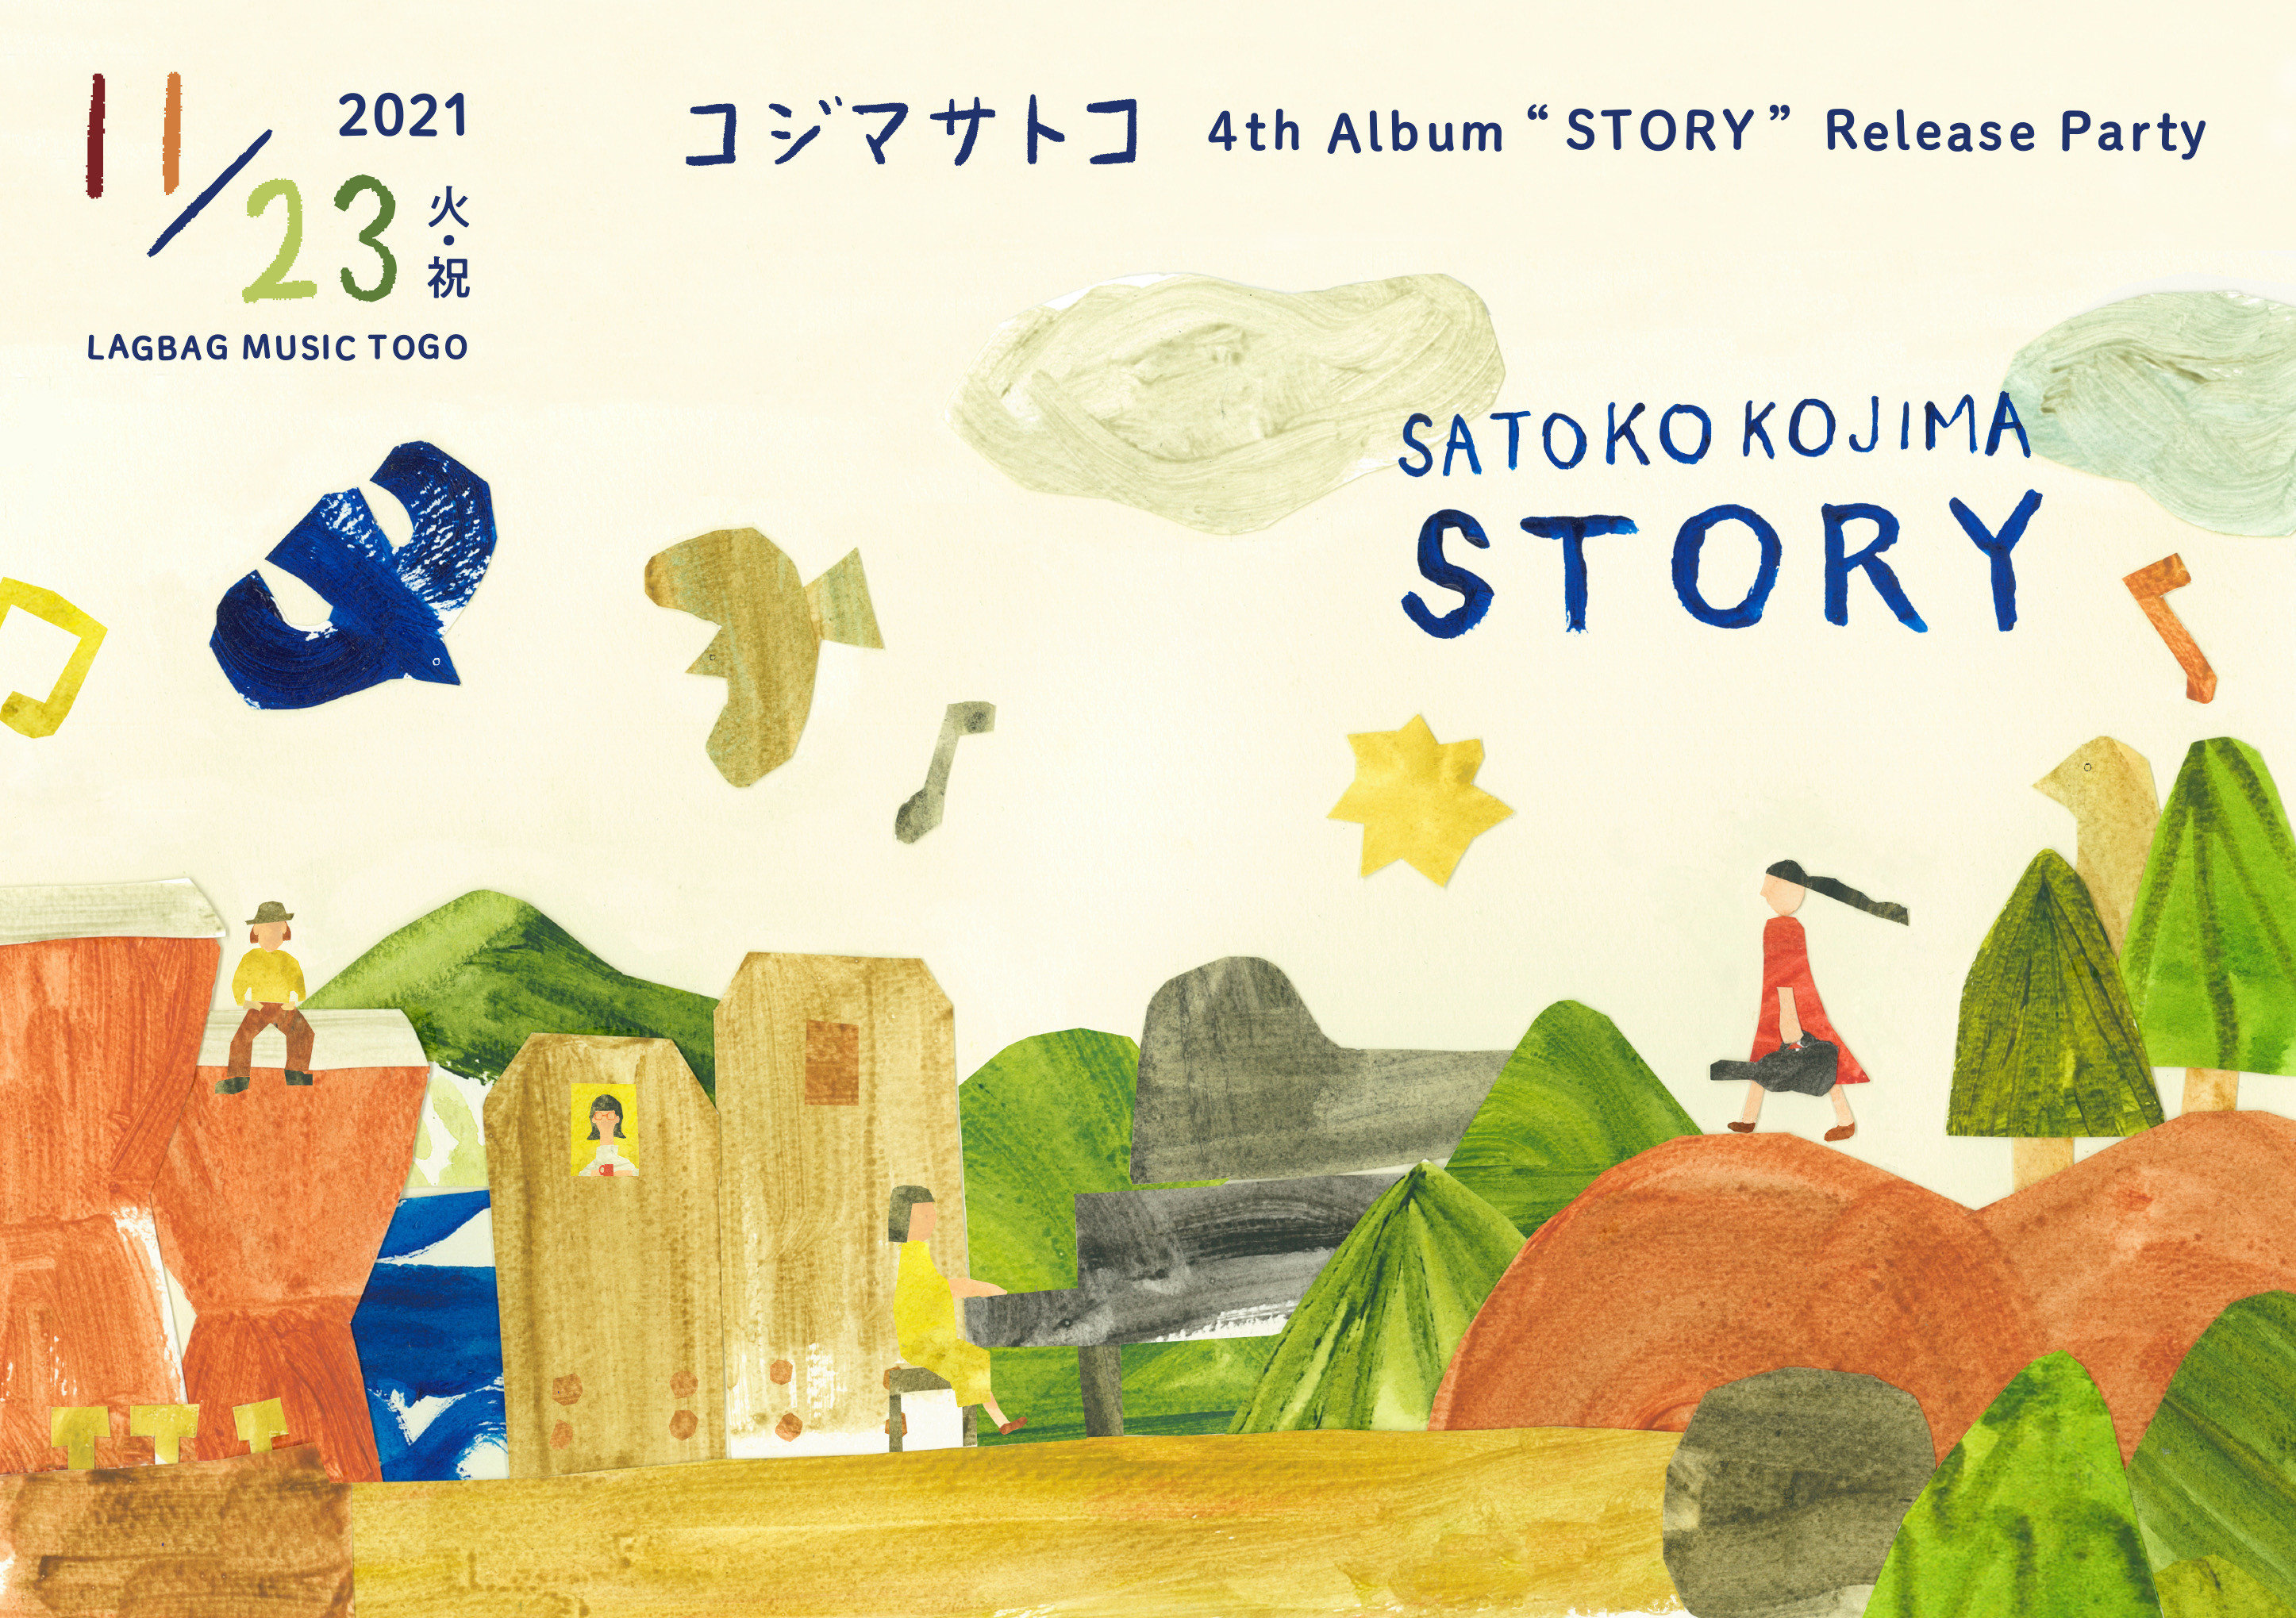 コジマサトコ 4th Album "STORY" 発売とリリースパーティーのお知らせ